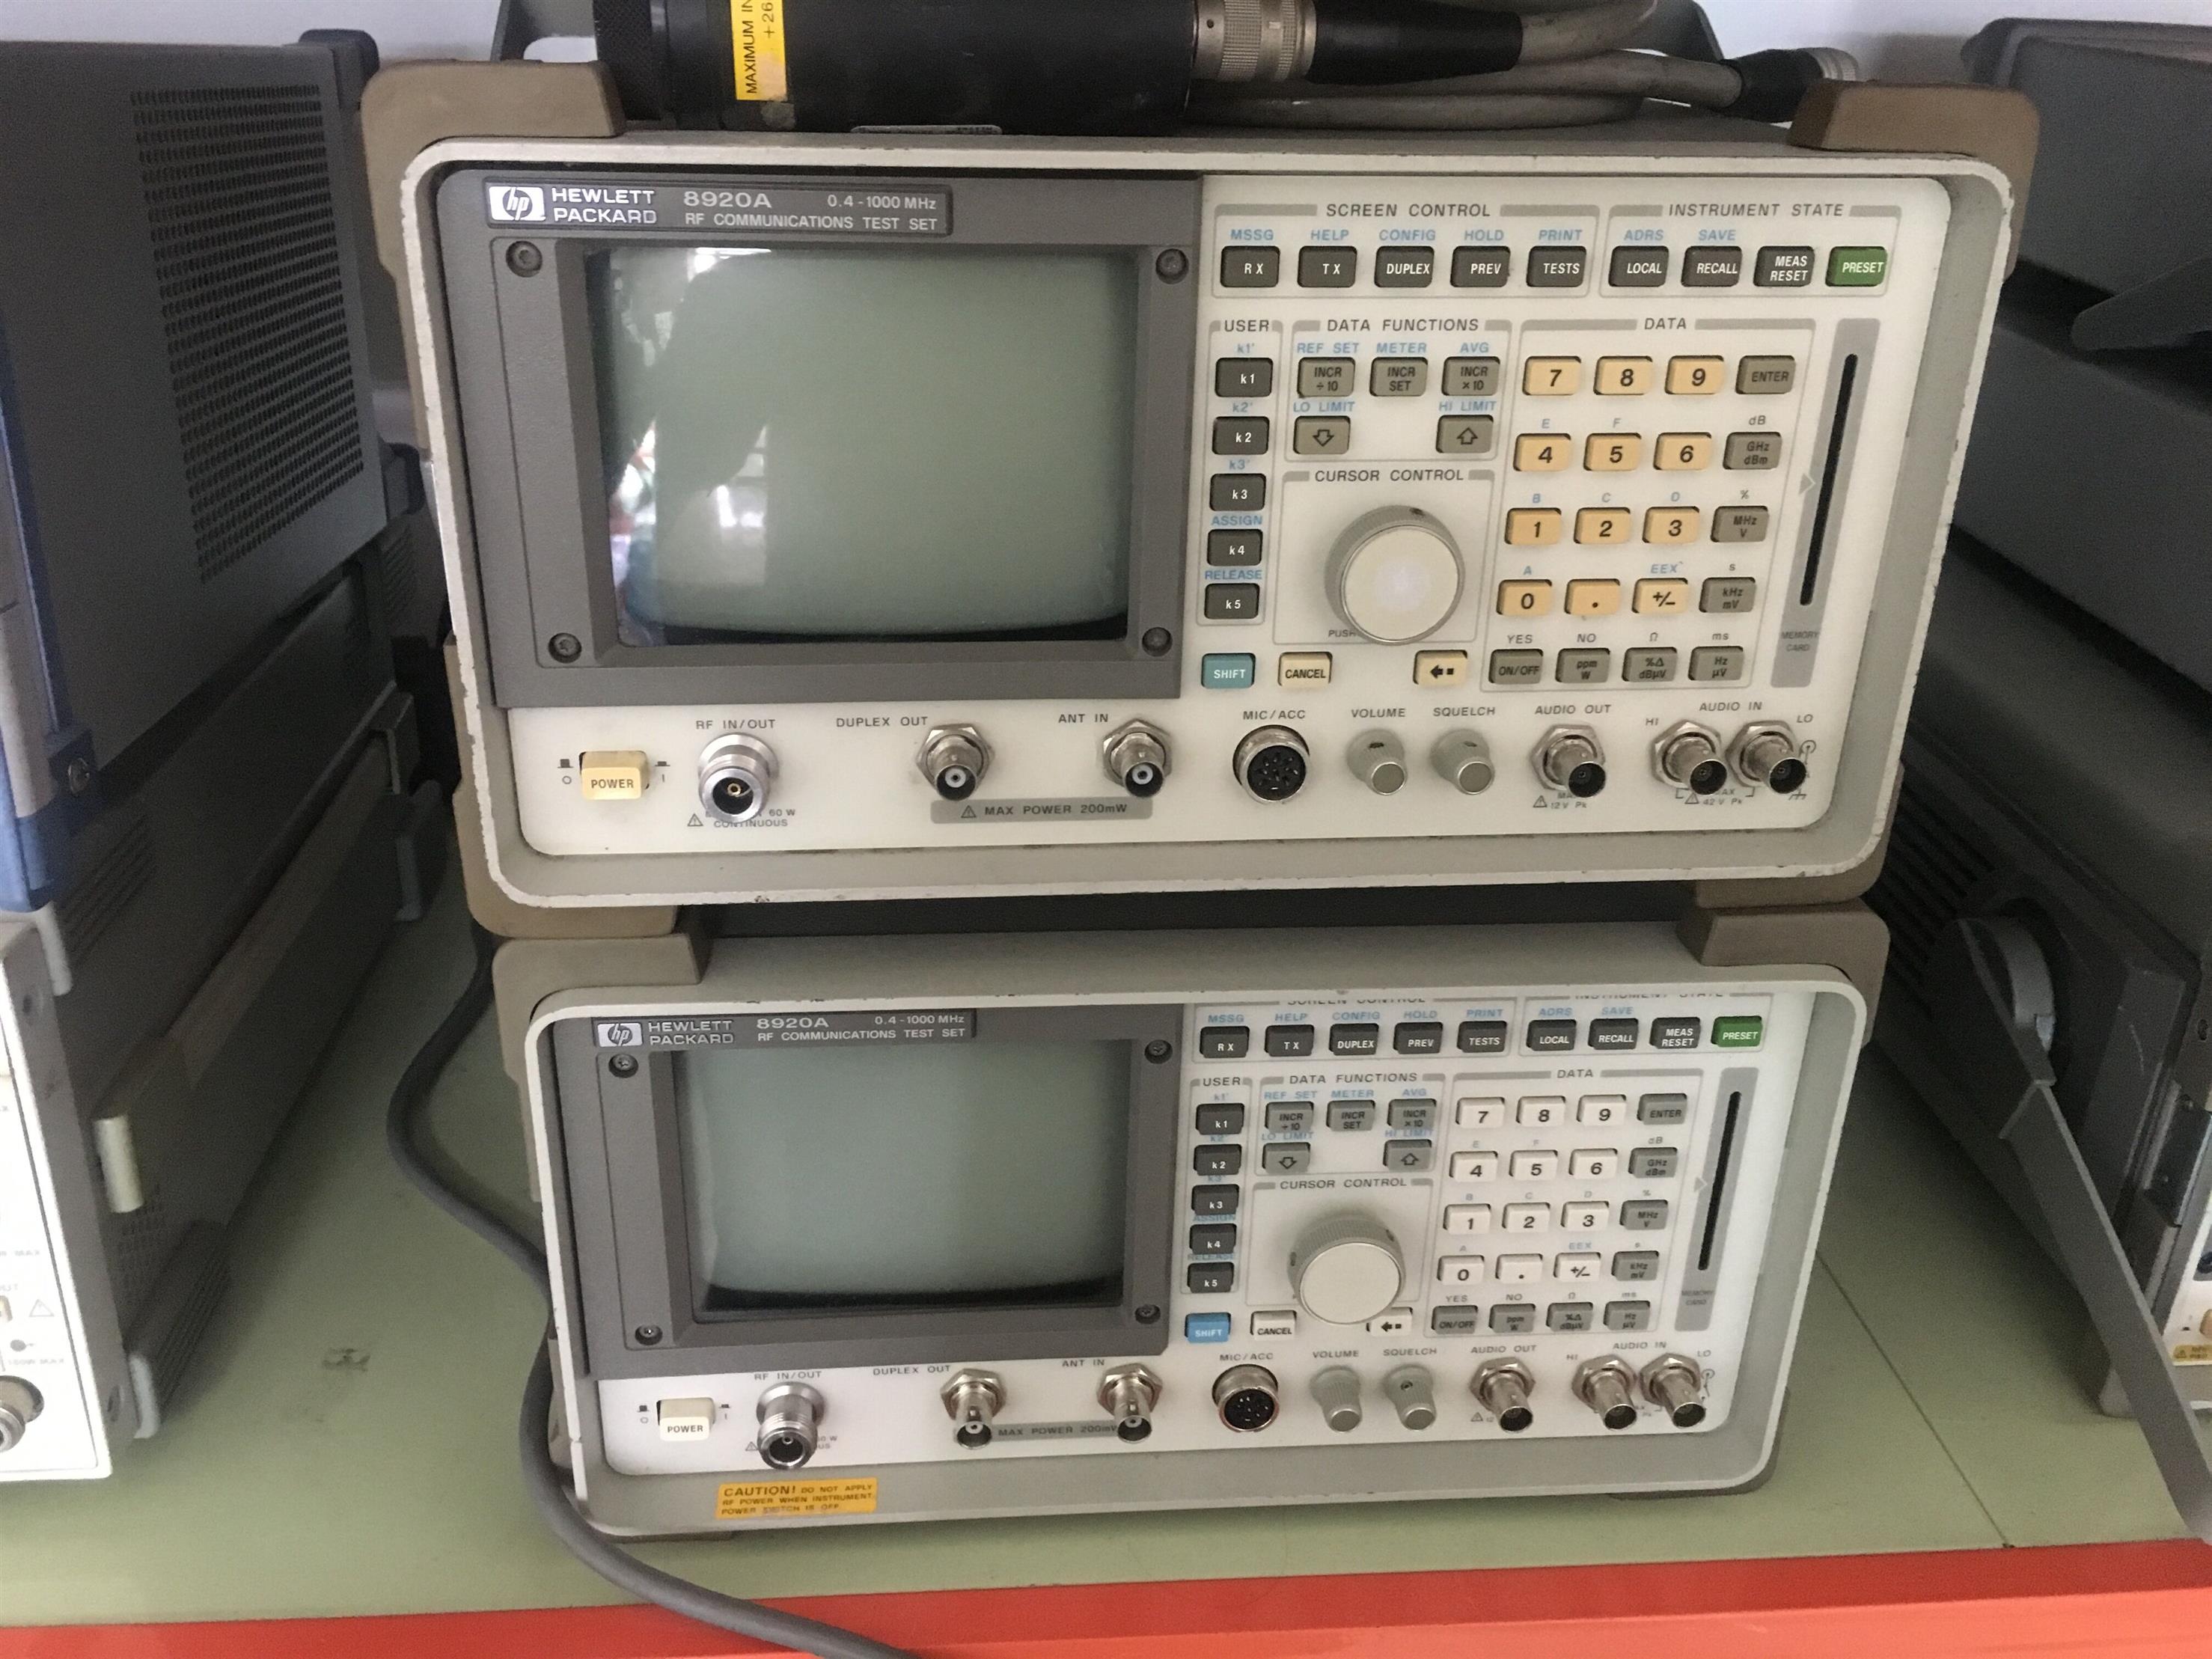 R&S罗德FSW43频谱分析仪闲置处理 专业的频谱分析仪库存回收